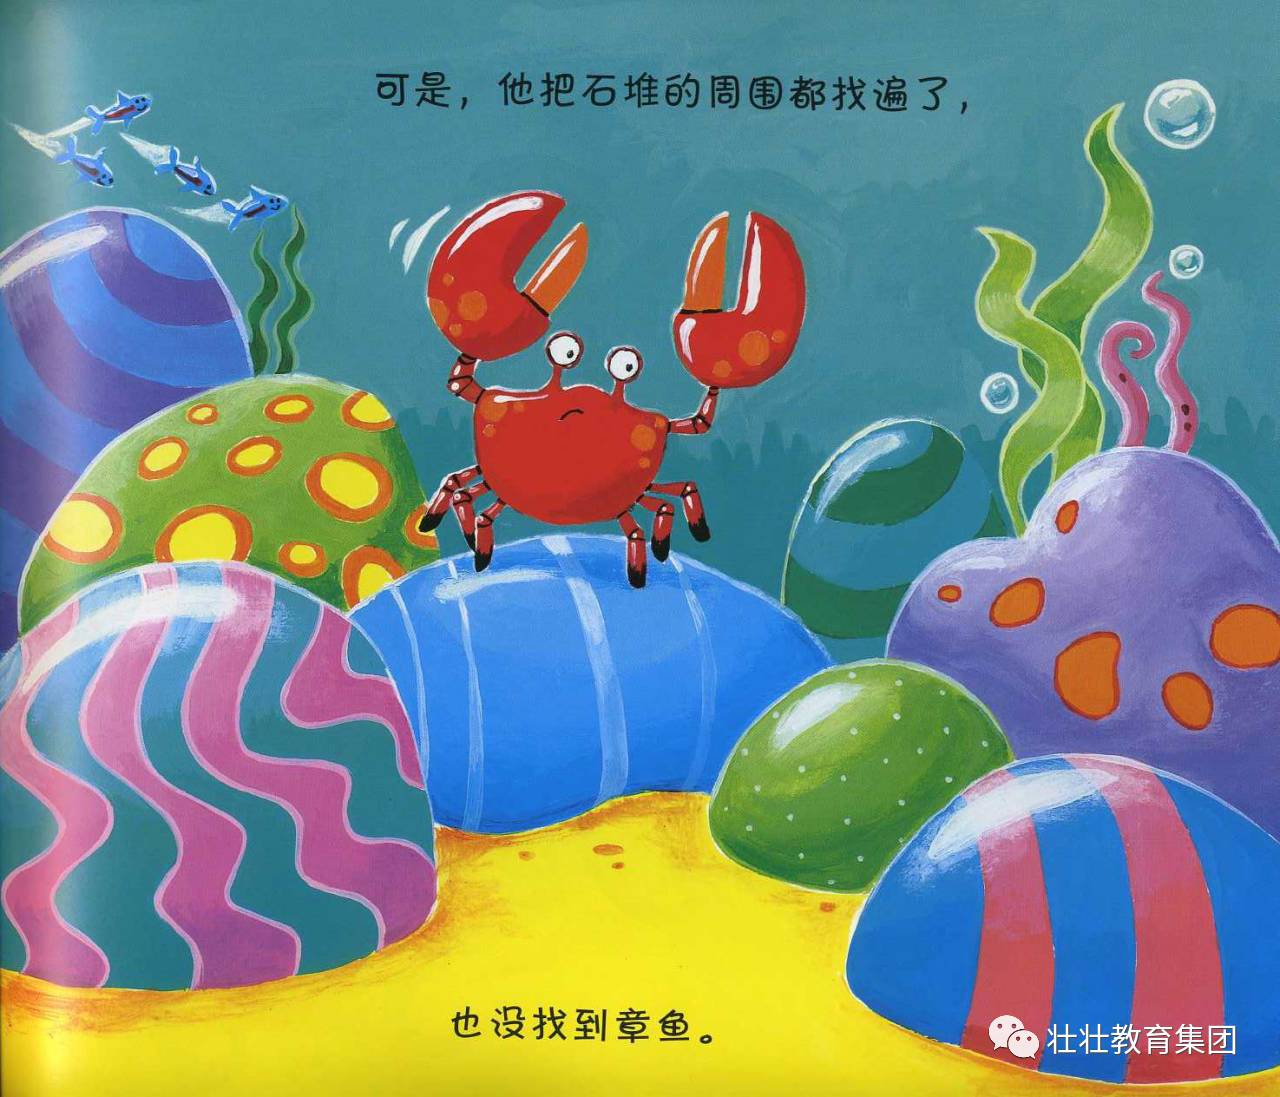 用色彩鲜明的画面,细致生动的局部刻画,一个可爱,充满童趣的小螃蟹